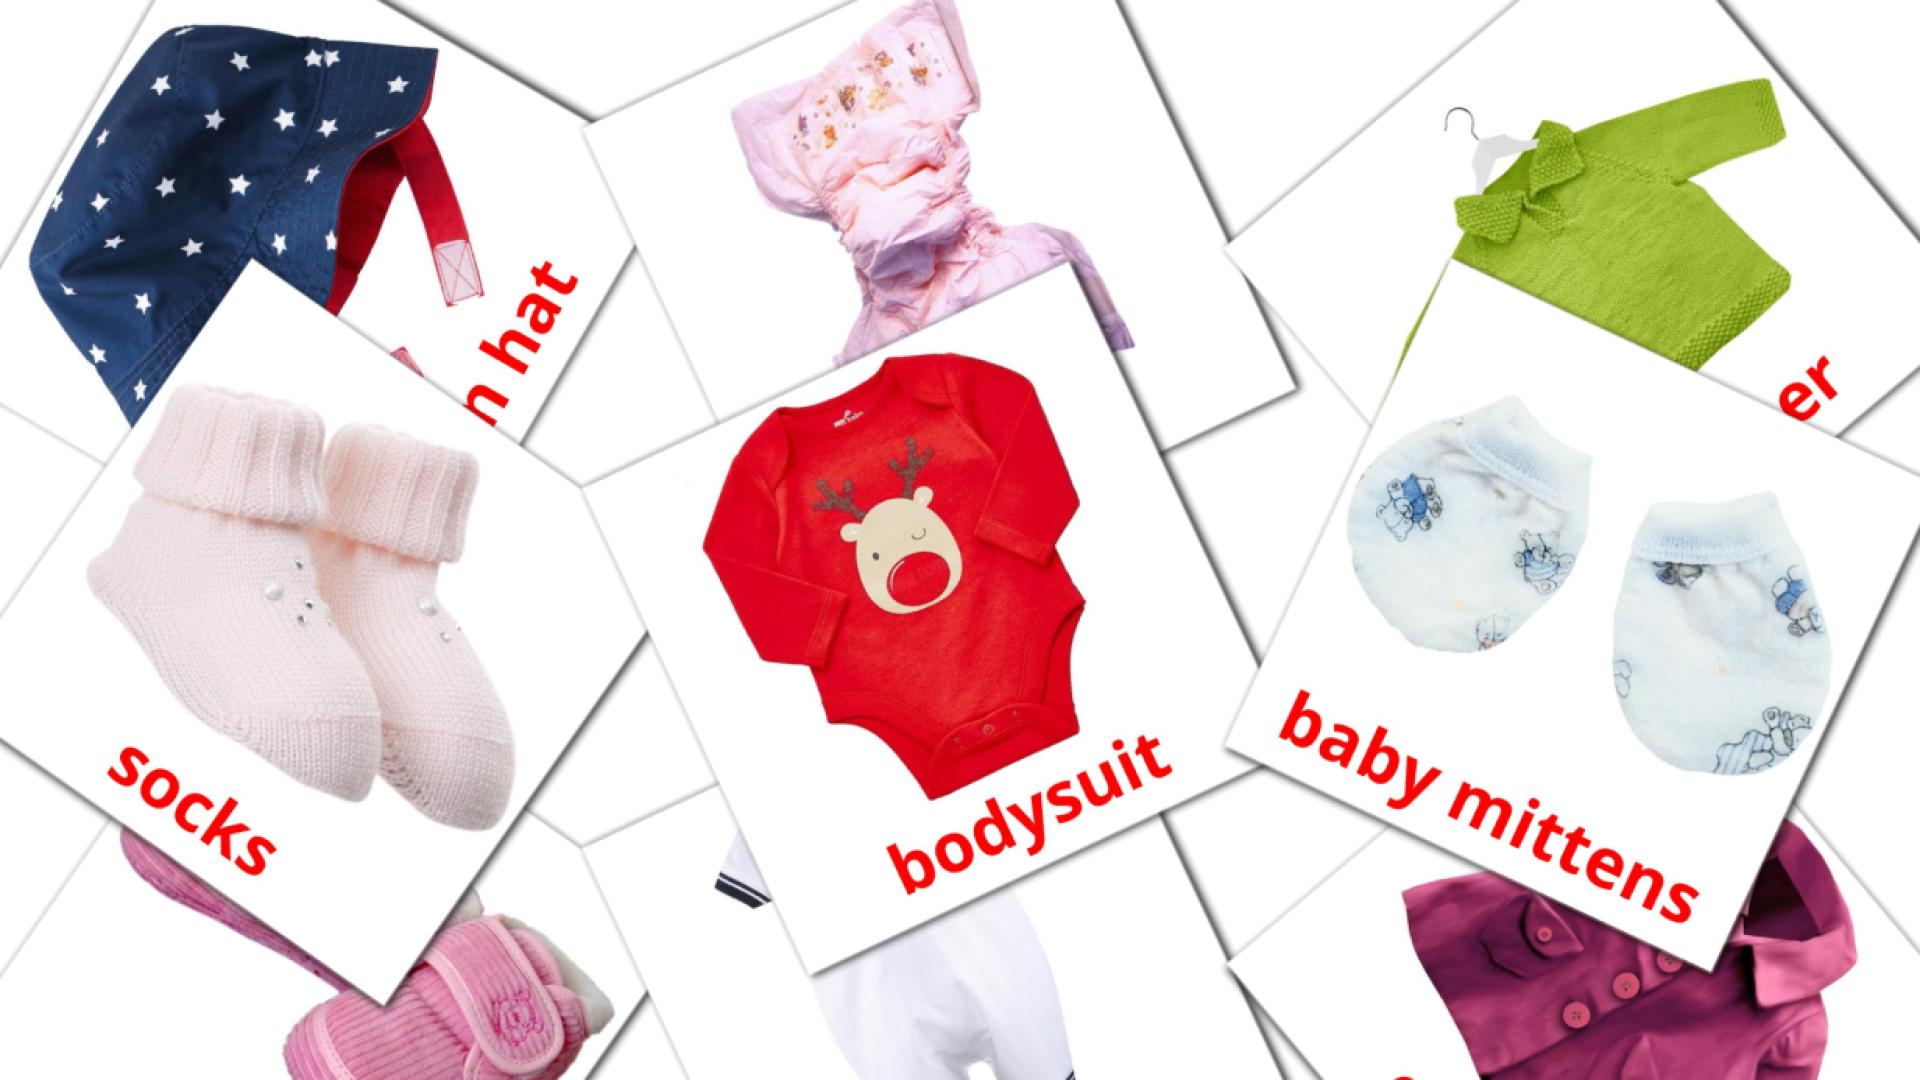 Bildkarten für Baby clothes